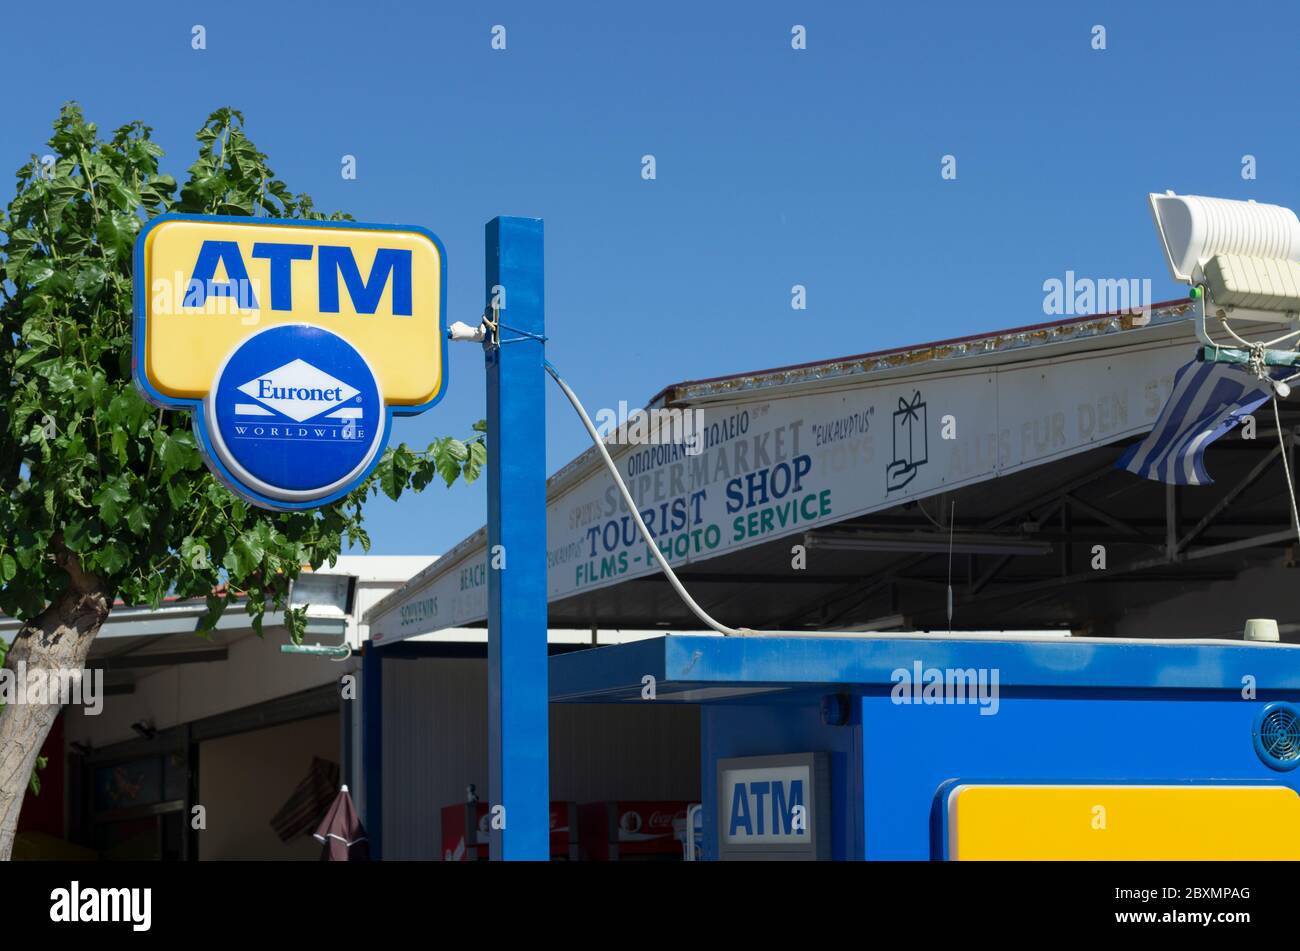 Kolymbia, Rhodos Insel, Griechenland - 24. Mai 2019: Schild mit dem Namen Euronet Worldwide Company und ATM im Hintergrund die Beschilderung von Touristenläden Stockfoto